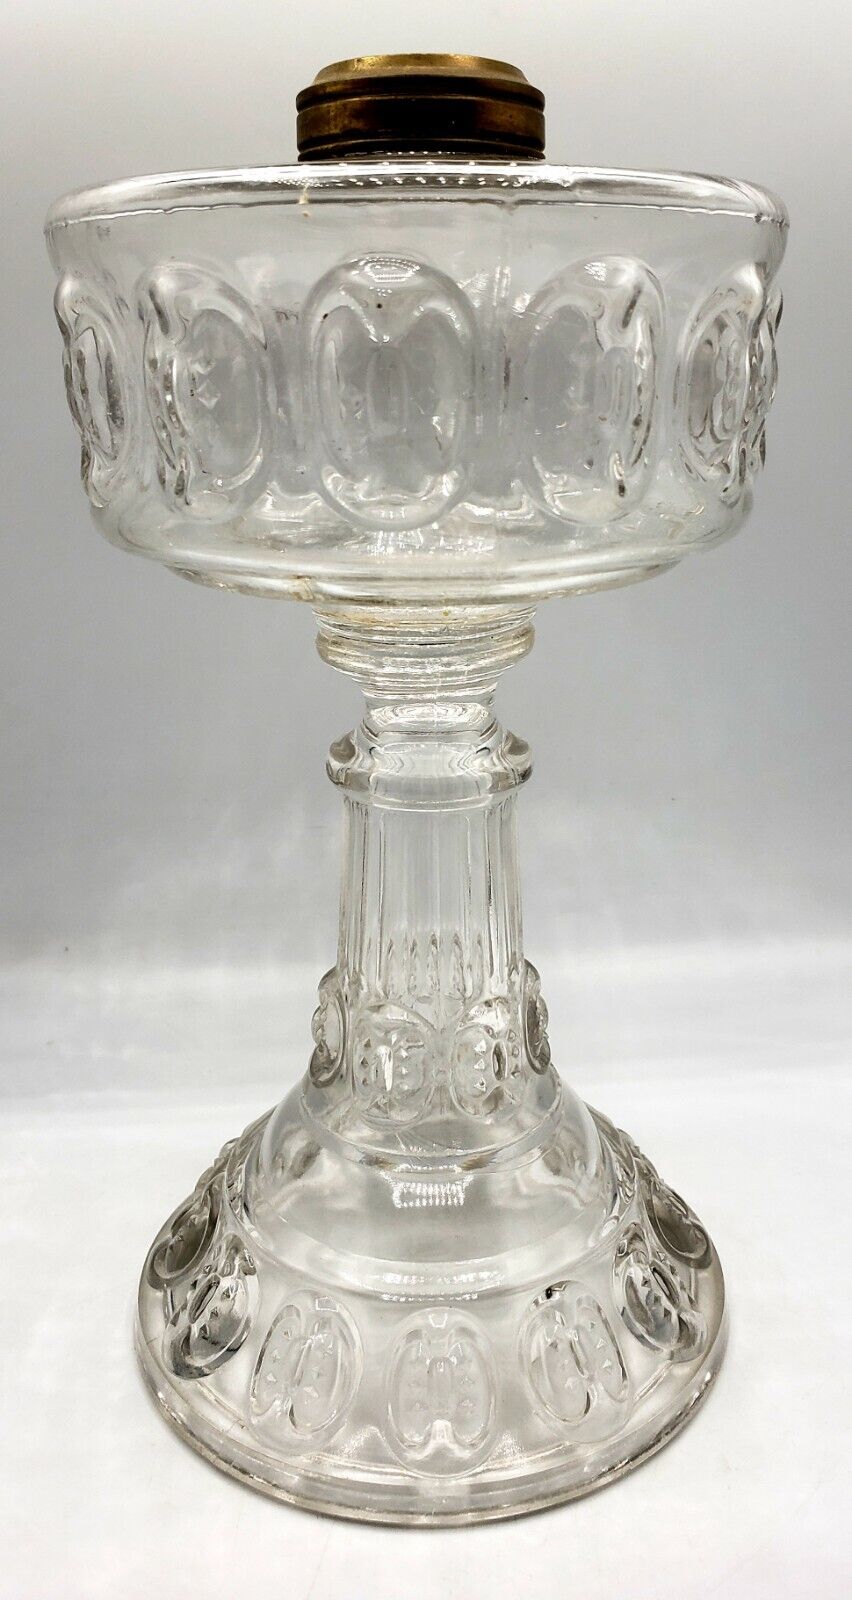 Ladybug Pattern Oil Kerosene Lamp Clear Glass EAPG Thuro Ref. c.1890s Antique